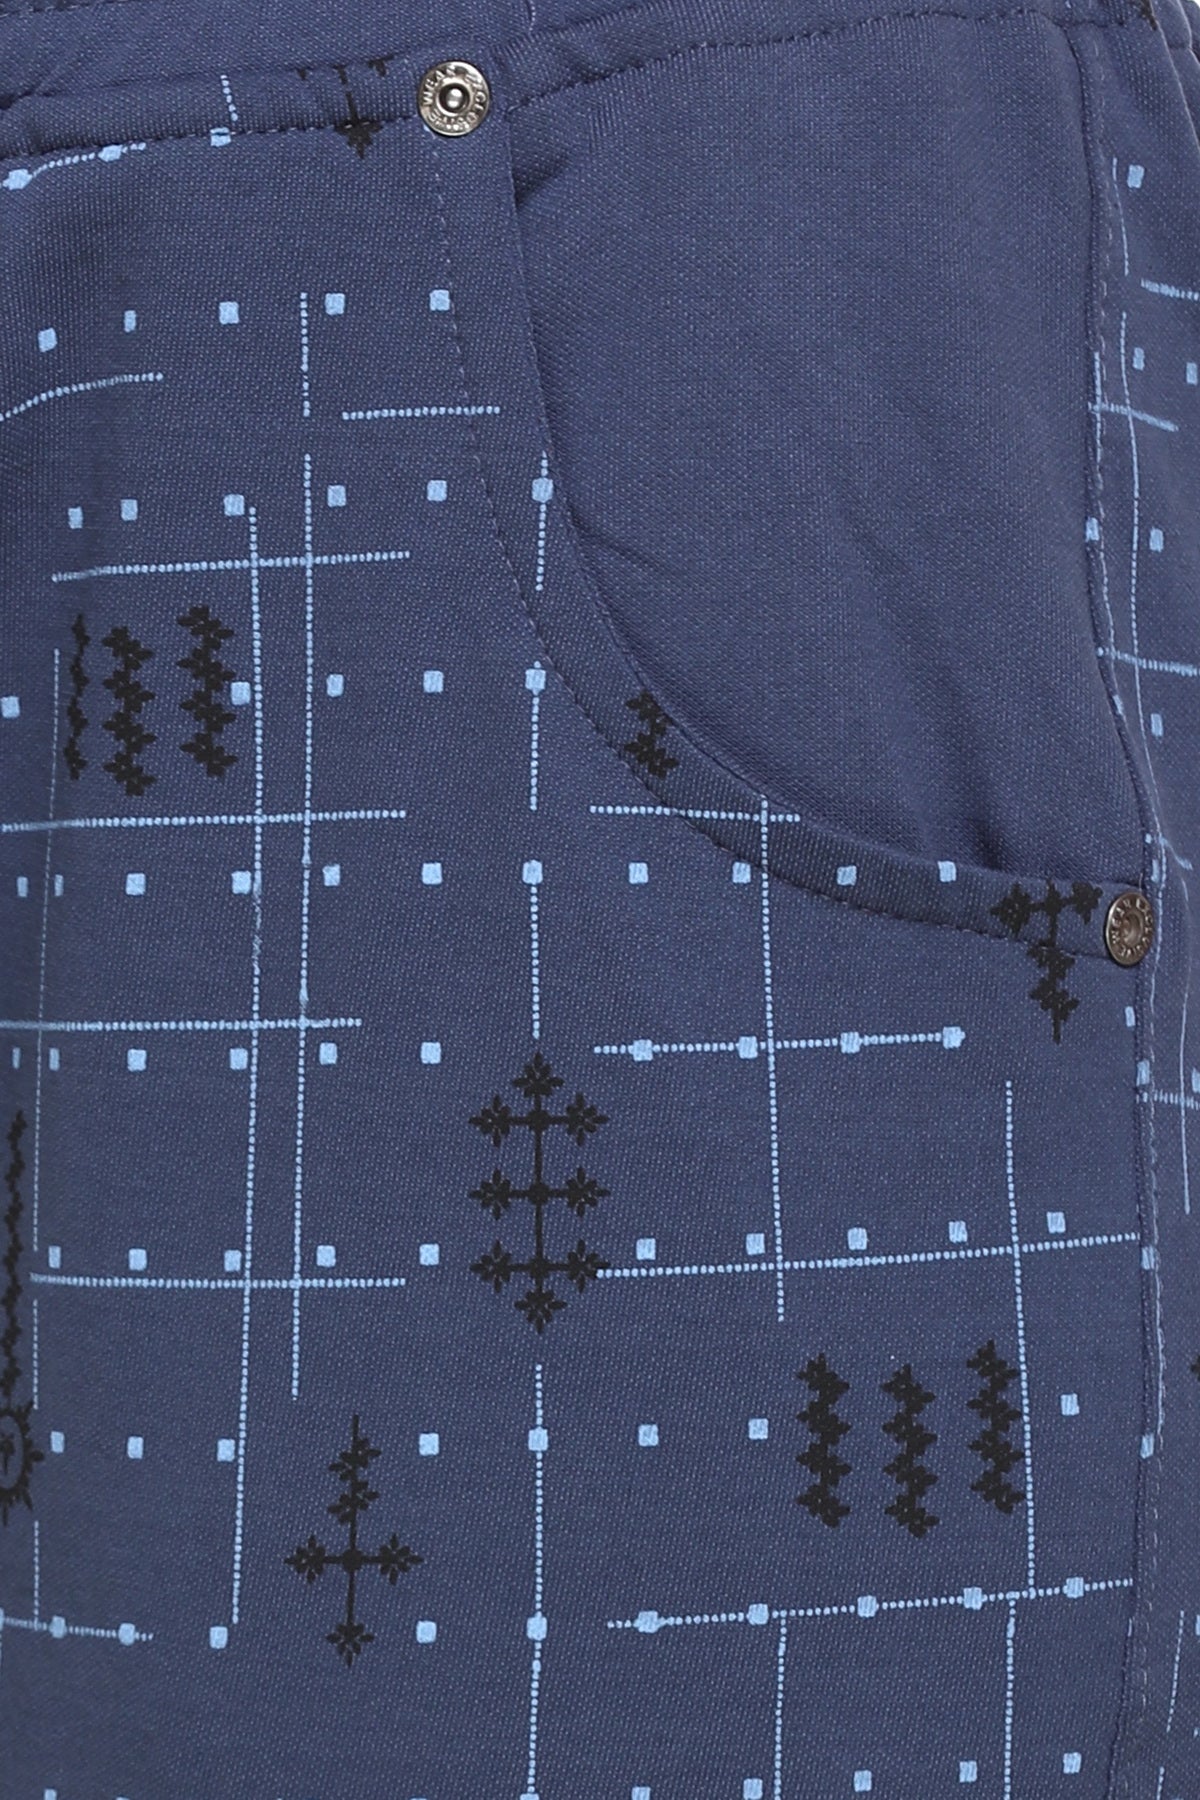 Cotton Printed Night Pajamas For Women - Blue